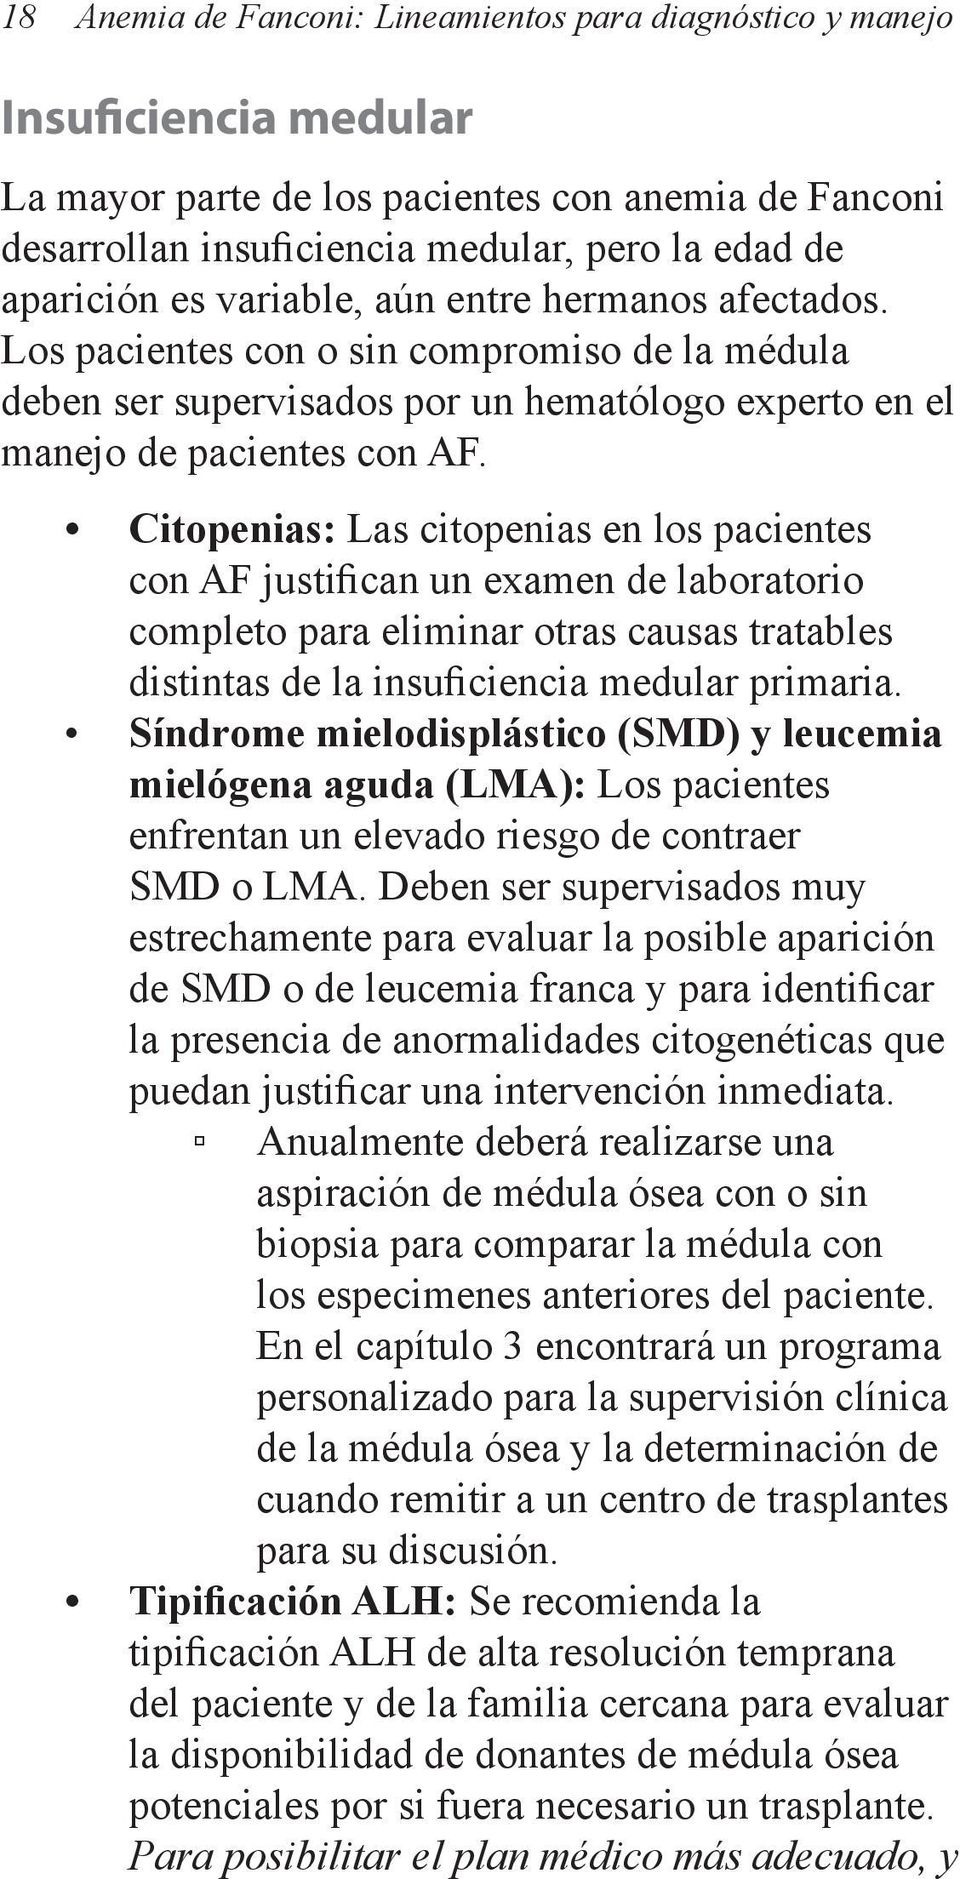 Citopenias: Las citopenias en los pacientes con AF justifican un examen de laboratorio completo para eliminar otras causas tratables distintas de la insuficiencia medular primaria.